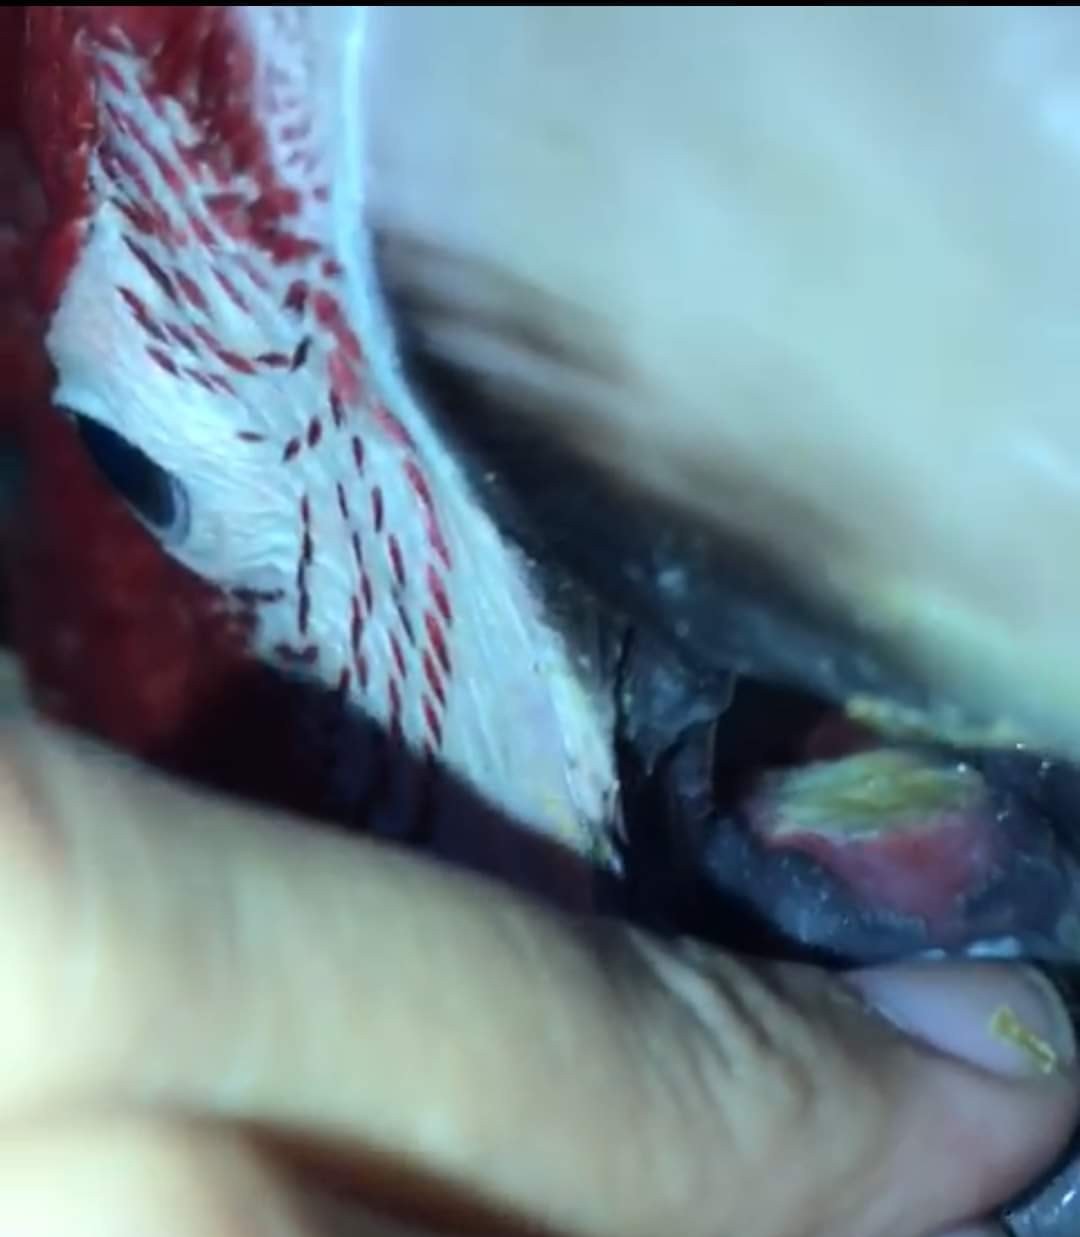 Bukan hanya kulit  saja, ternyata terdapat juga infeksi jamur di mulut burung paruh bengkok. Bila di dalam mulut burung paruh bengkok terdapat ruam putih aneh seperti sariawan, hal itu bisa disebabkan oleh spora jamur jenis candida yang berkembang biak.